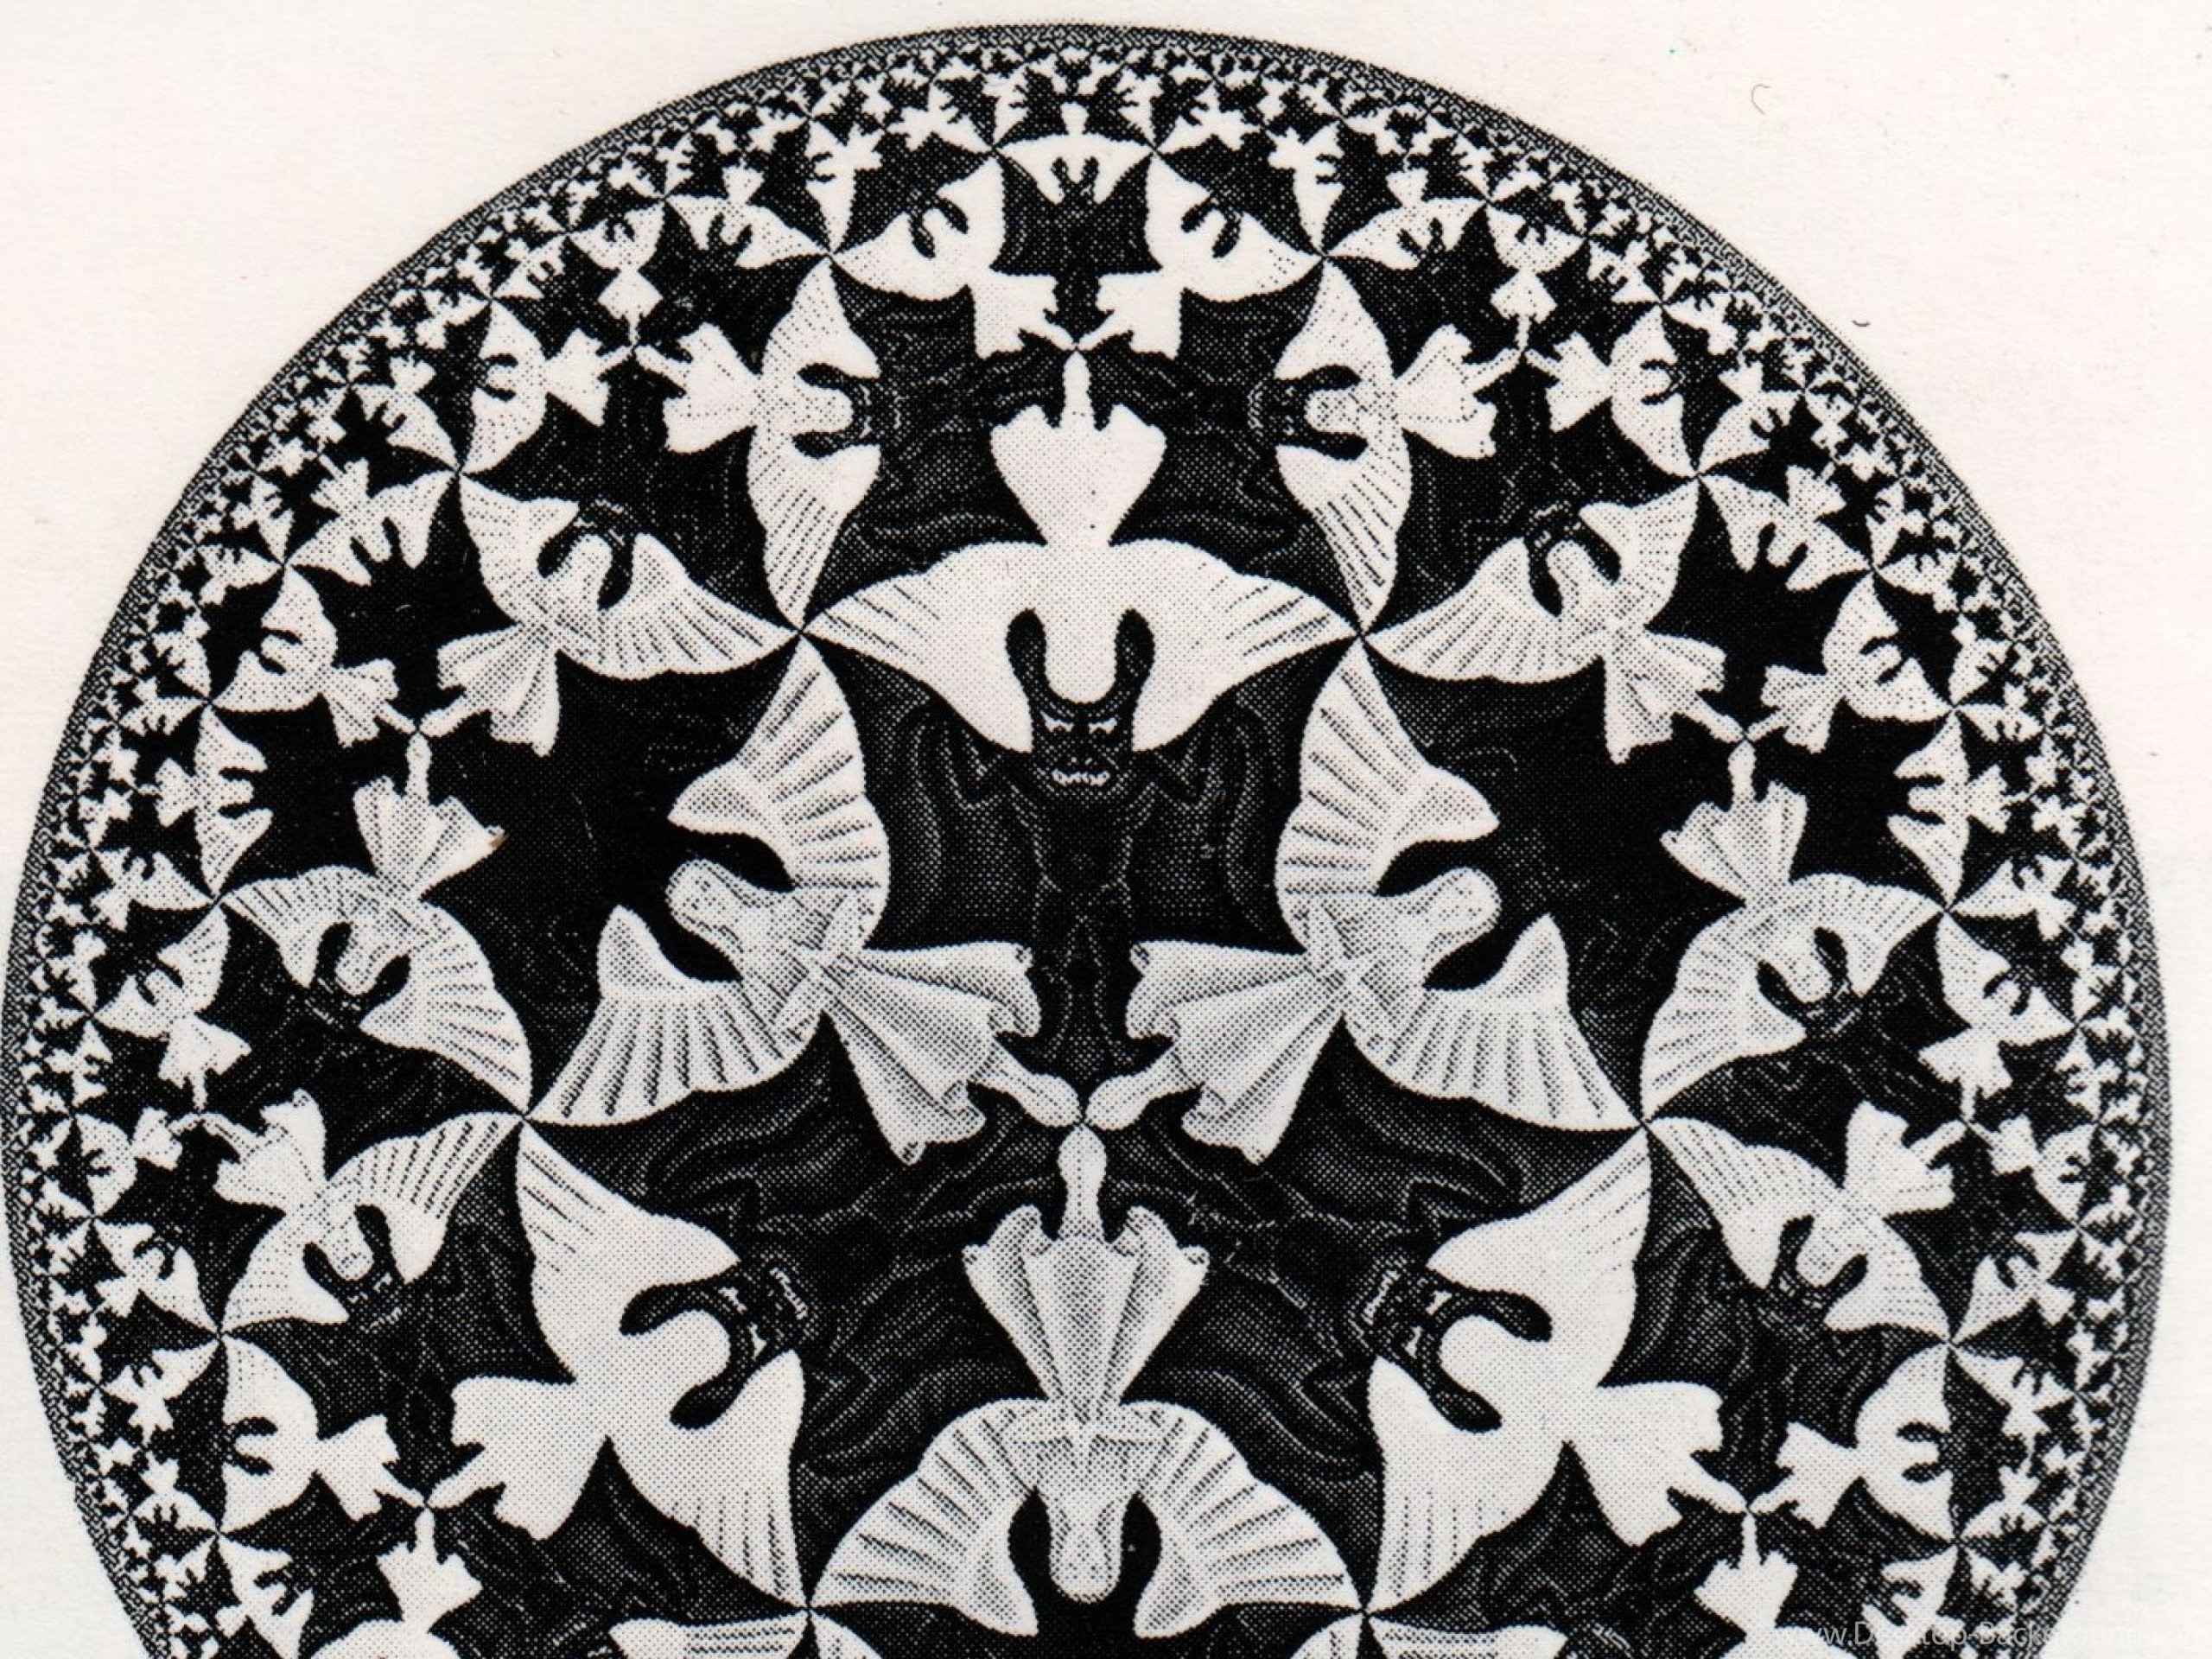 2560x1920 Download Wallpapers, Download  Mc Escher 1408x1422 .